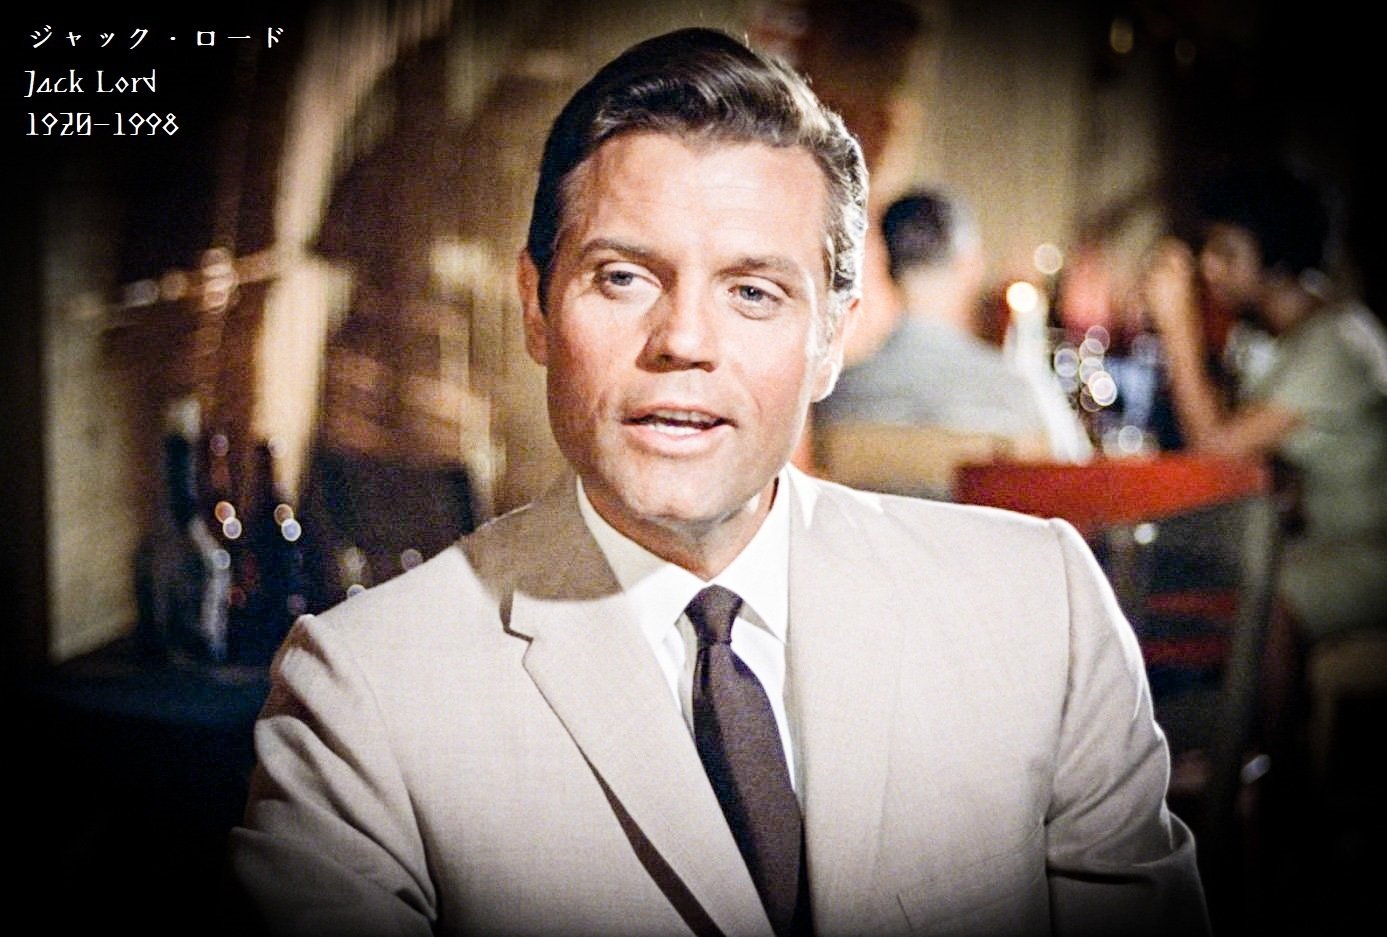 百年ﾆｭｰｽ 19 大正9 12月30日 木 俳優ジャック ロード Jack Lord 誕生 ニューヨーク市ブルックリン出身 父は汽船会社重役で船員をしていたことも 007 ドクター ノオ で 吉塚康一 百年ﾆｭｰｽ 毎日が100周年 Note